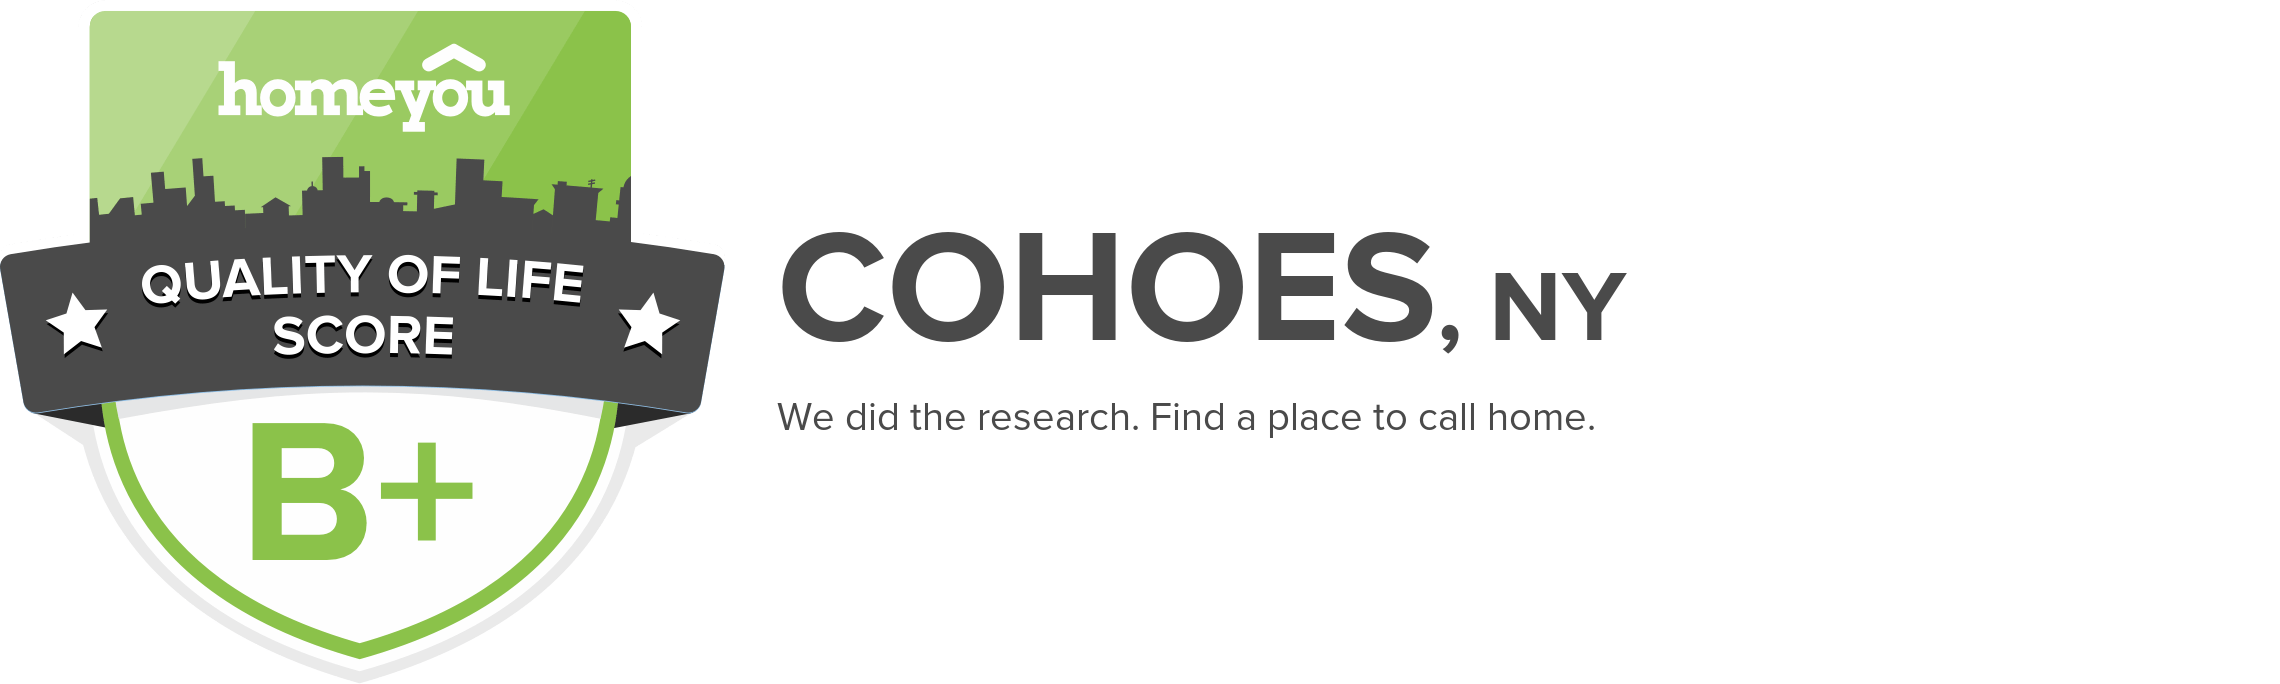 Cohoes, NY